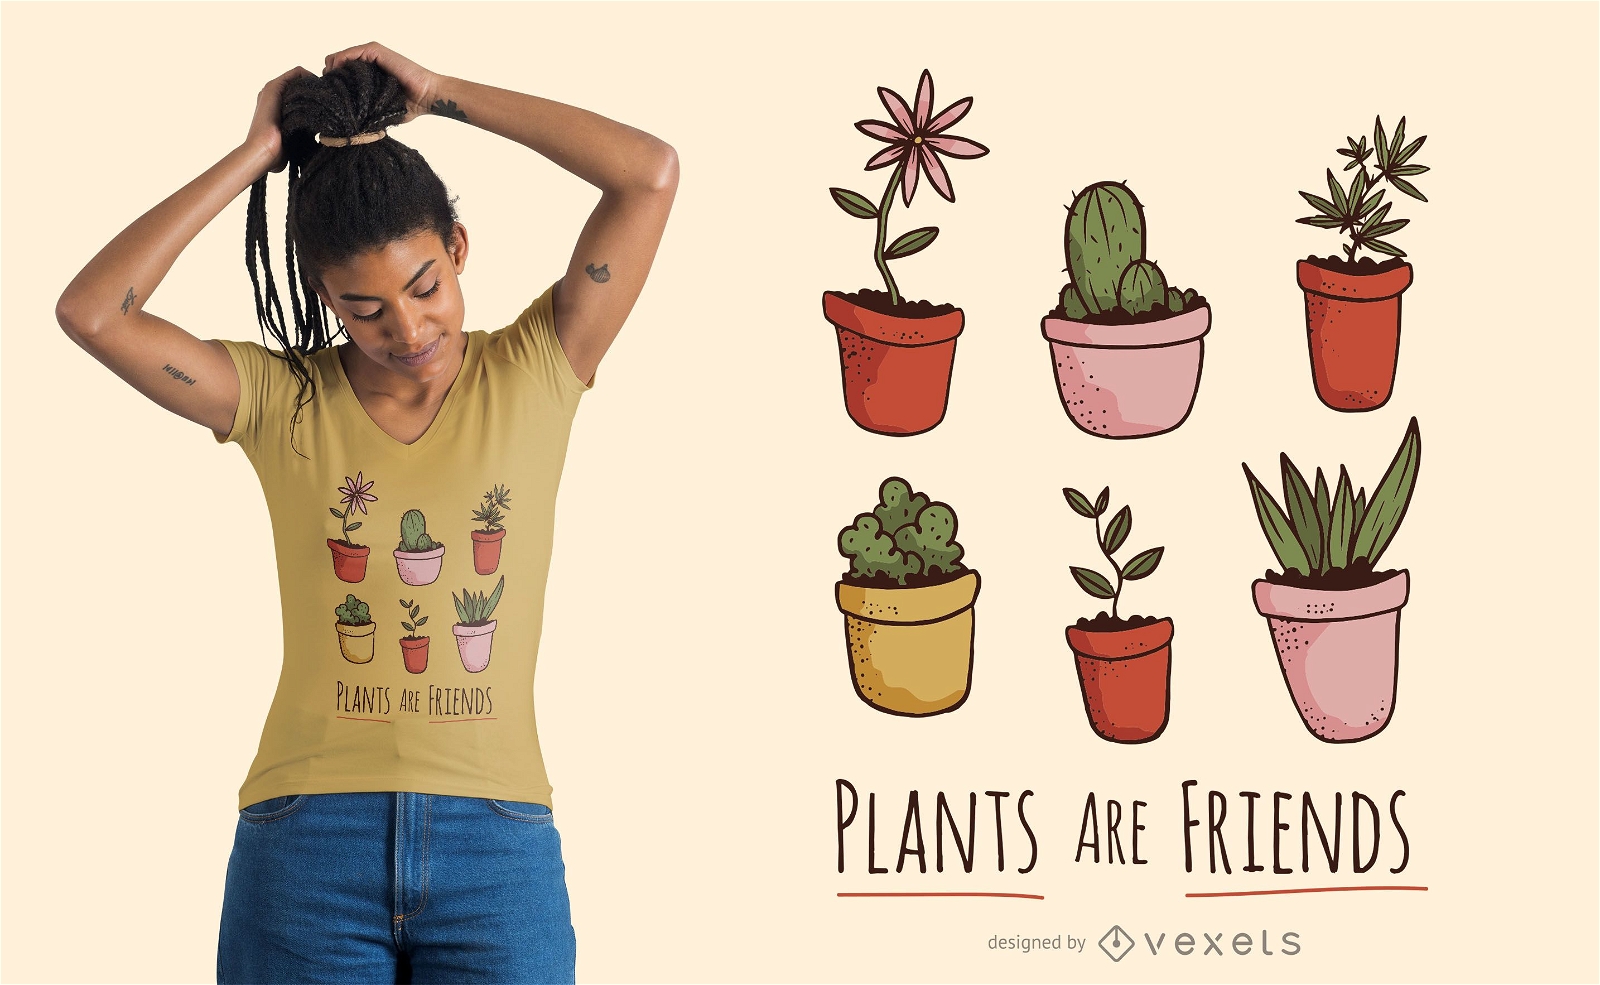 Plants are friends t-shirt design